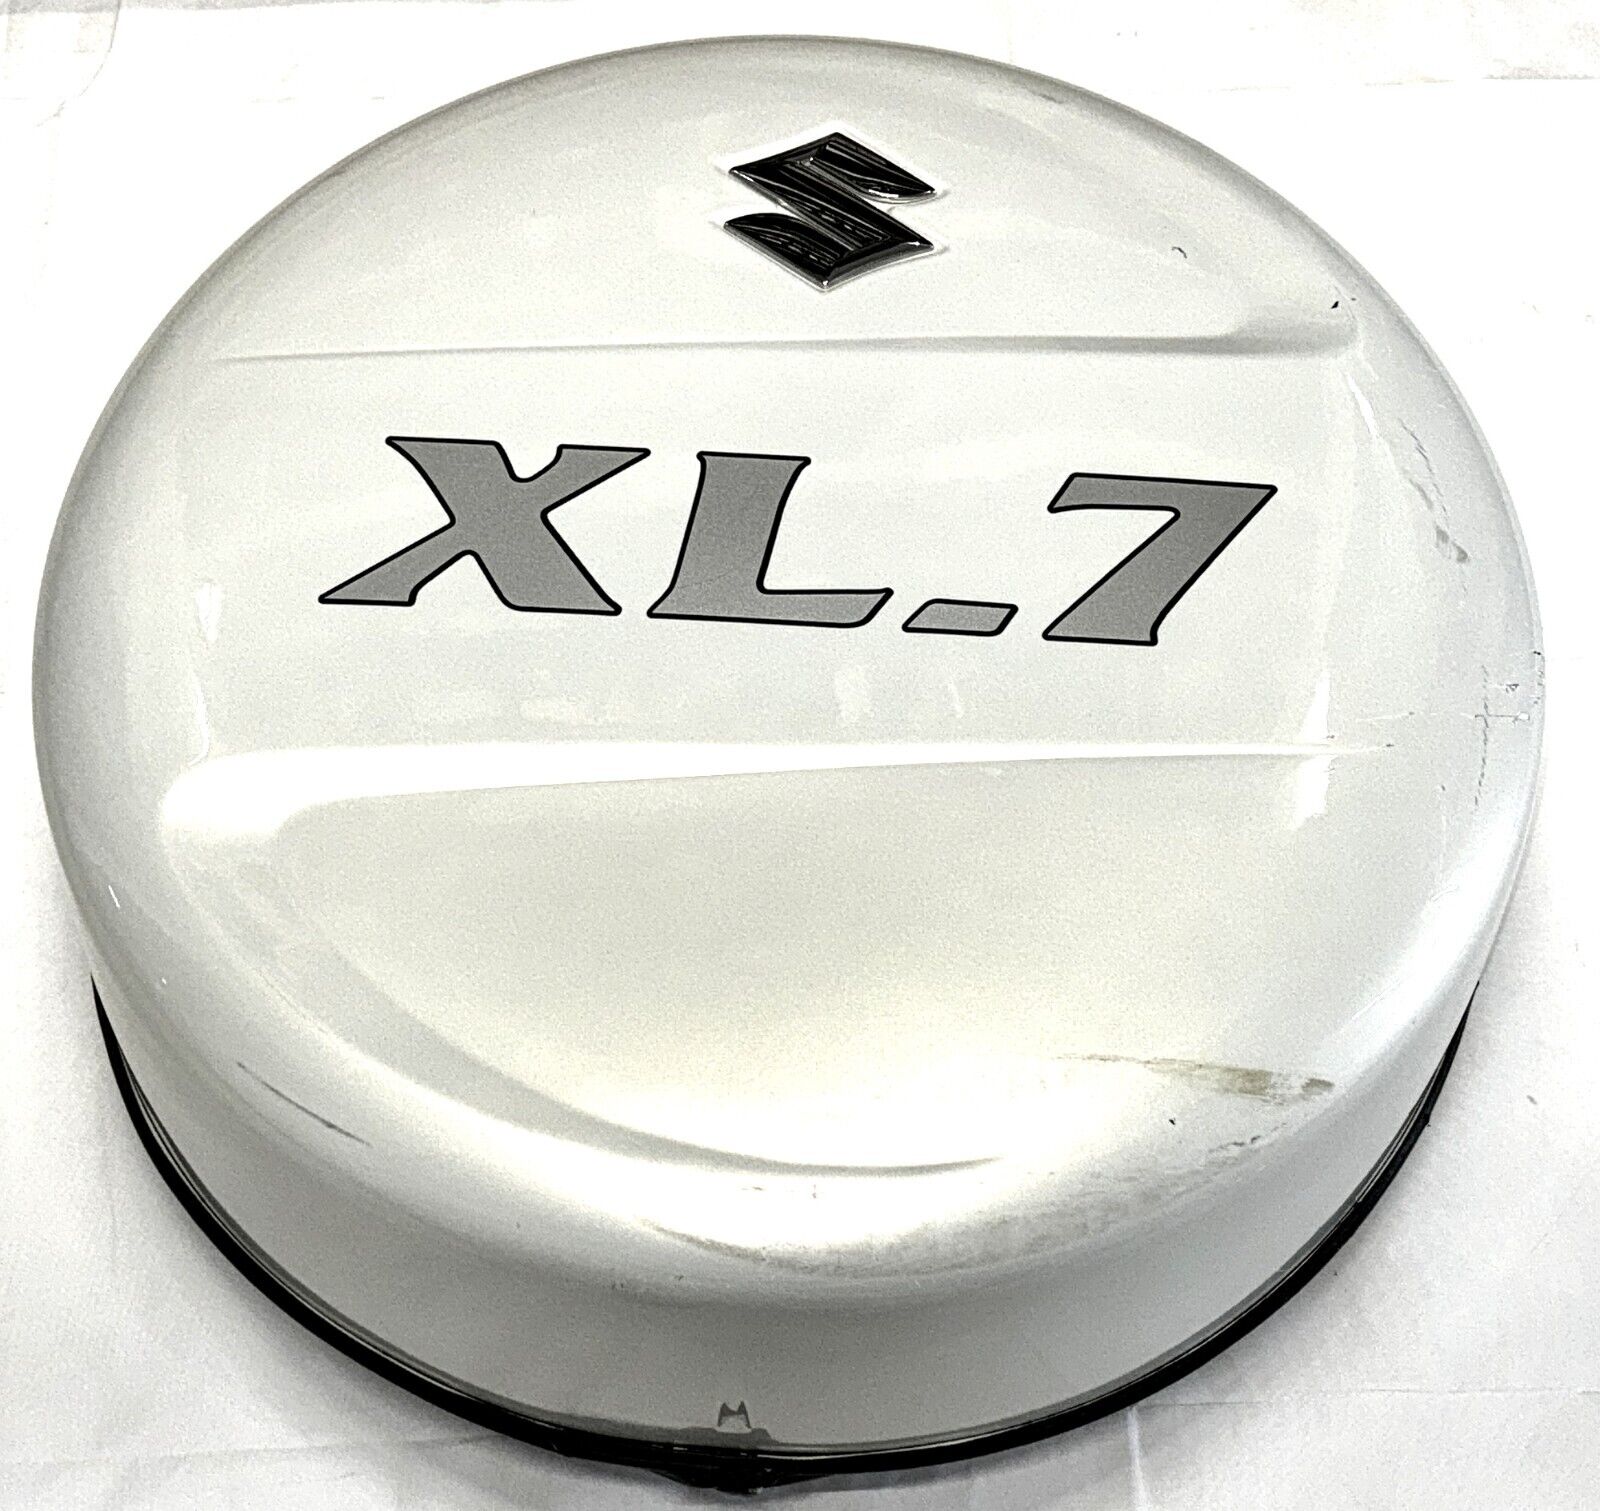 04 05 06 Suzuki XL7—Spare Tire Cover, White Pearl